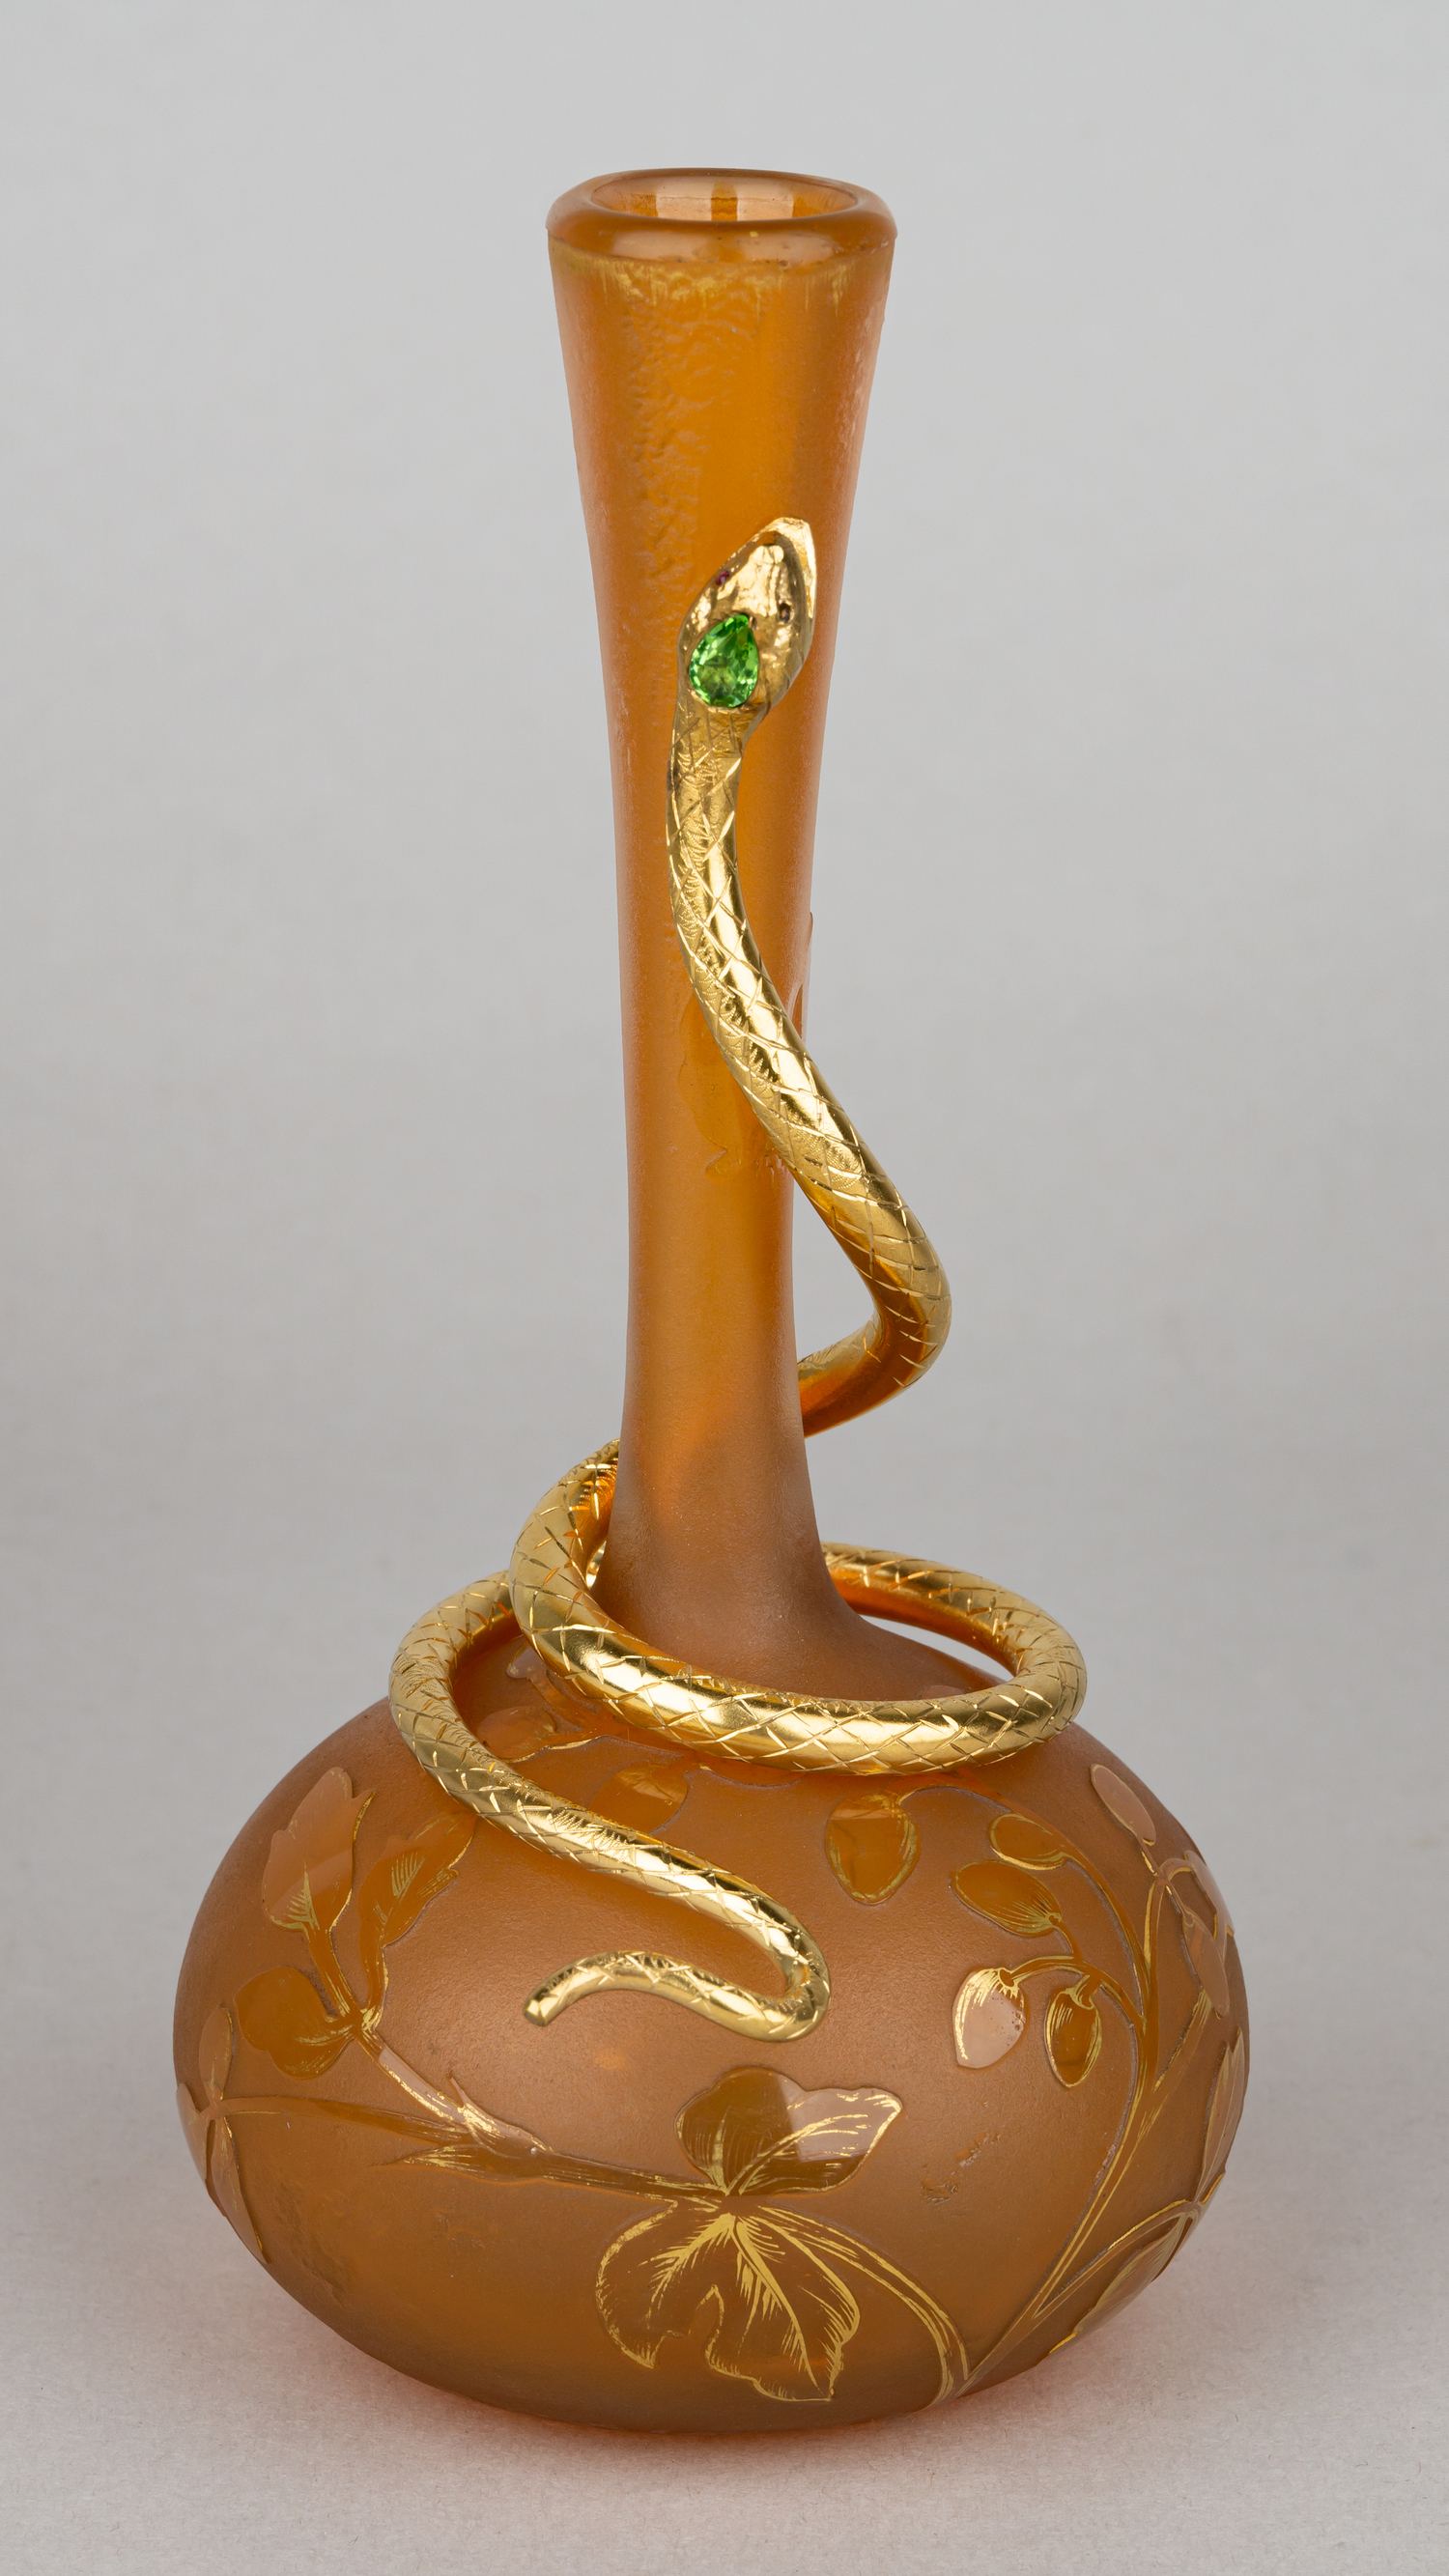 (Даум Нанси) Ваза в стиле модерн «Змея».  Франция, Нанси, фирма Дом (Daum Nancy), 1890-е гг.